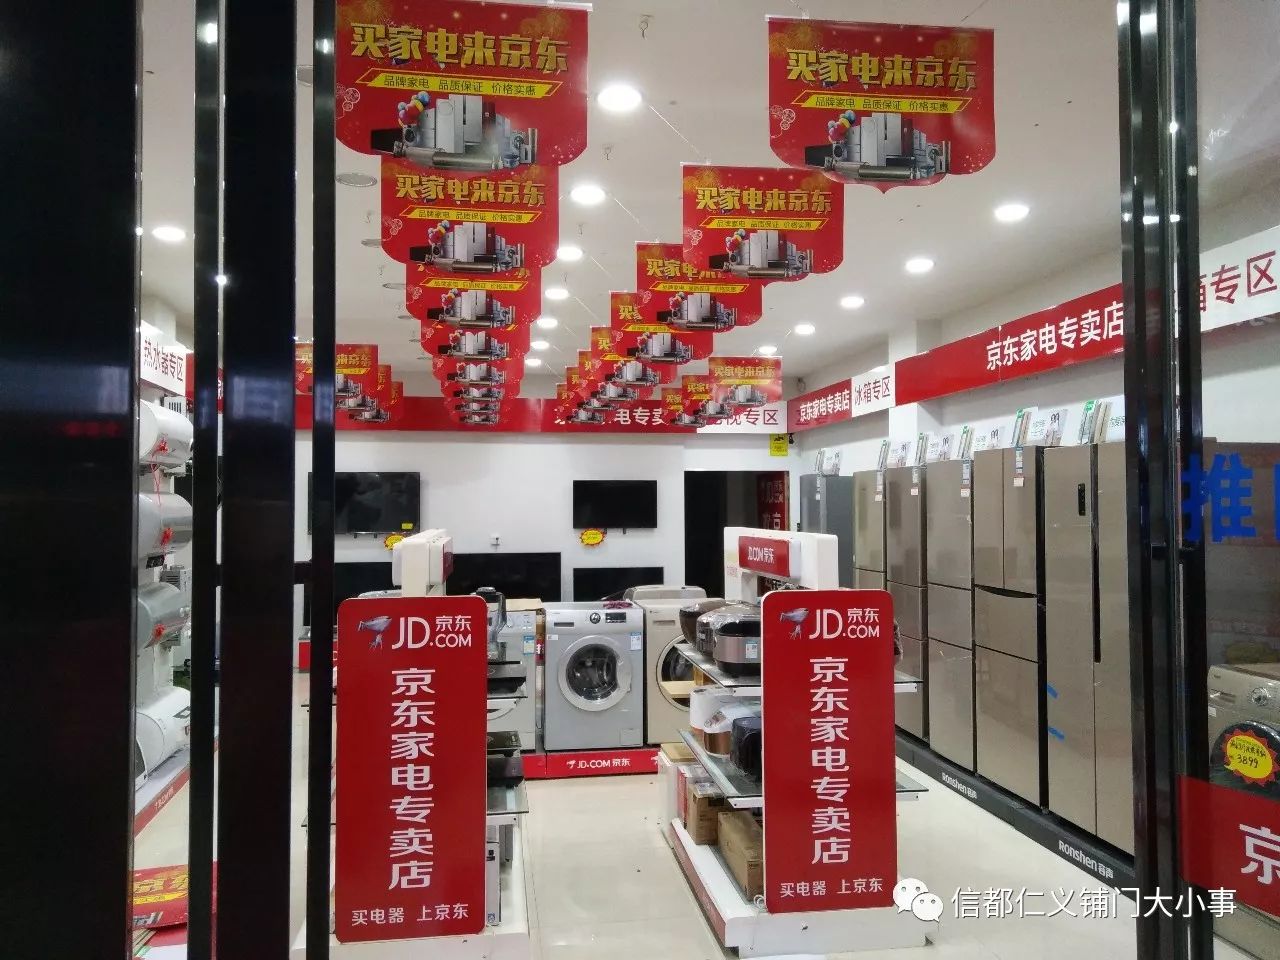 信都京东家电专卖店盛大开业,更低的价格更好的服务,超薄触摸电磁炉